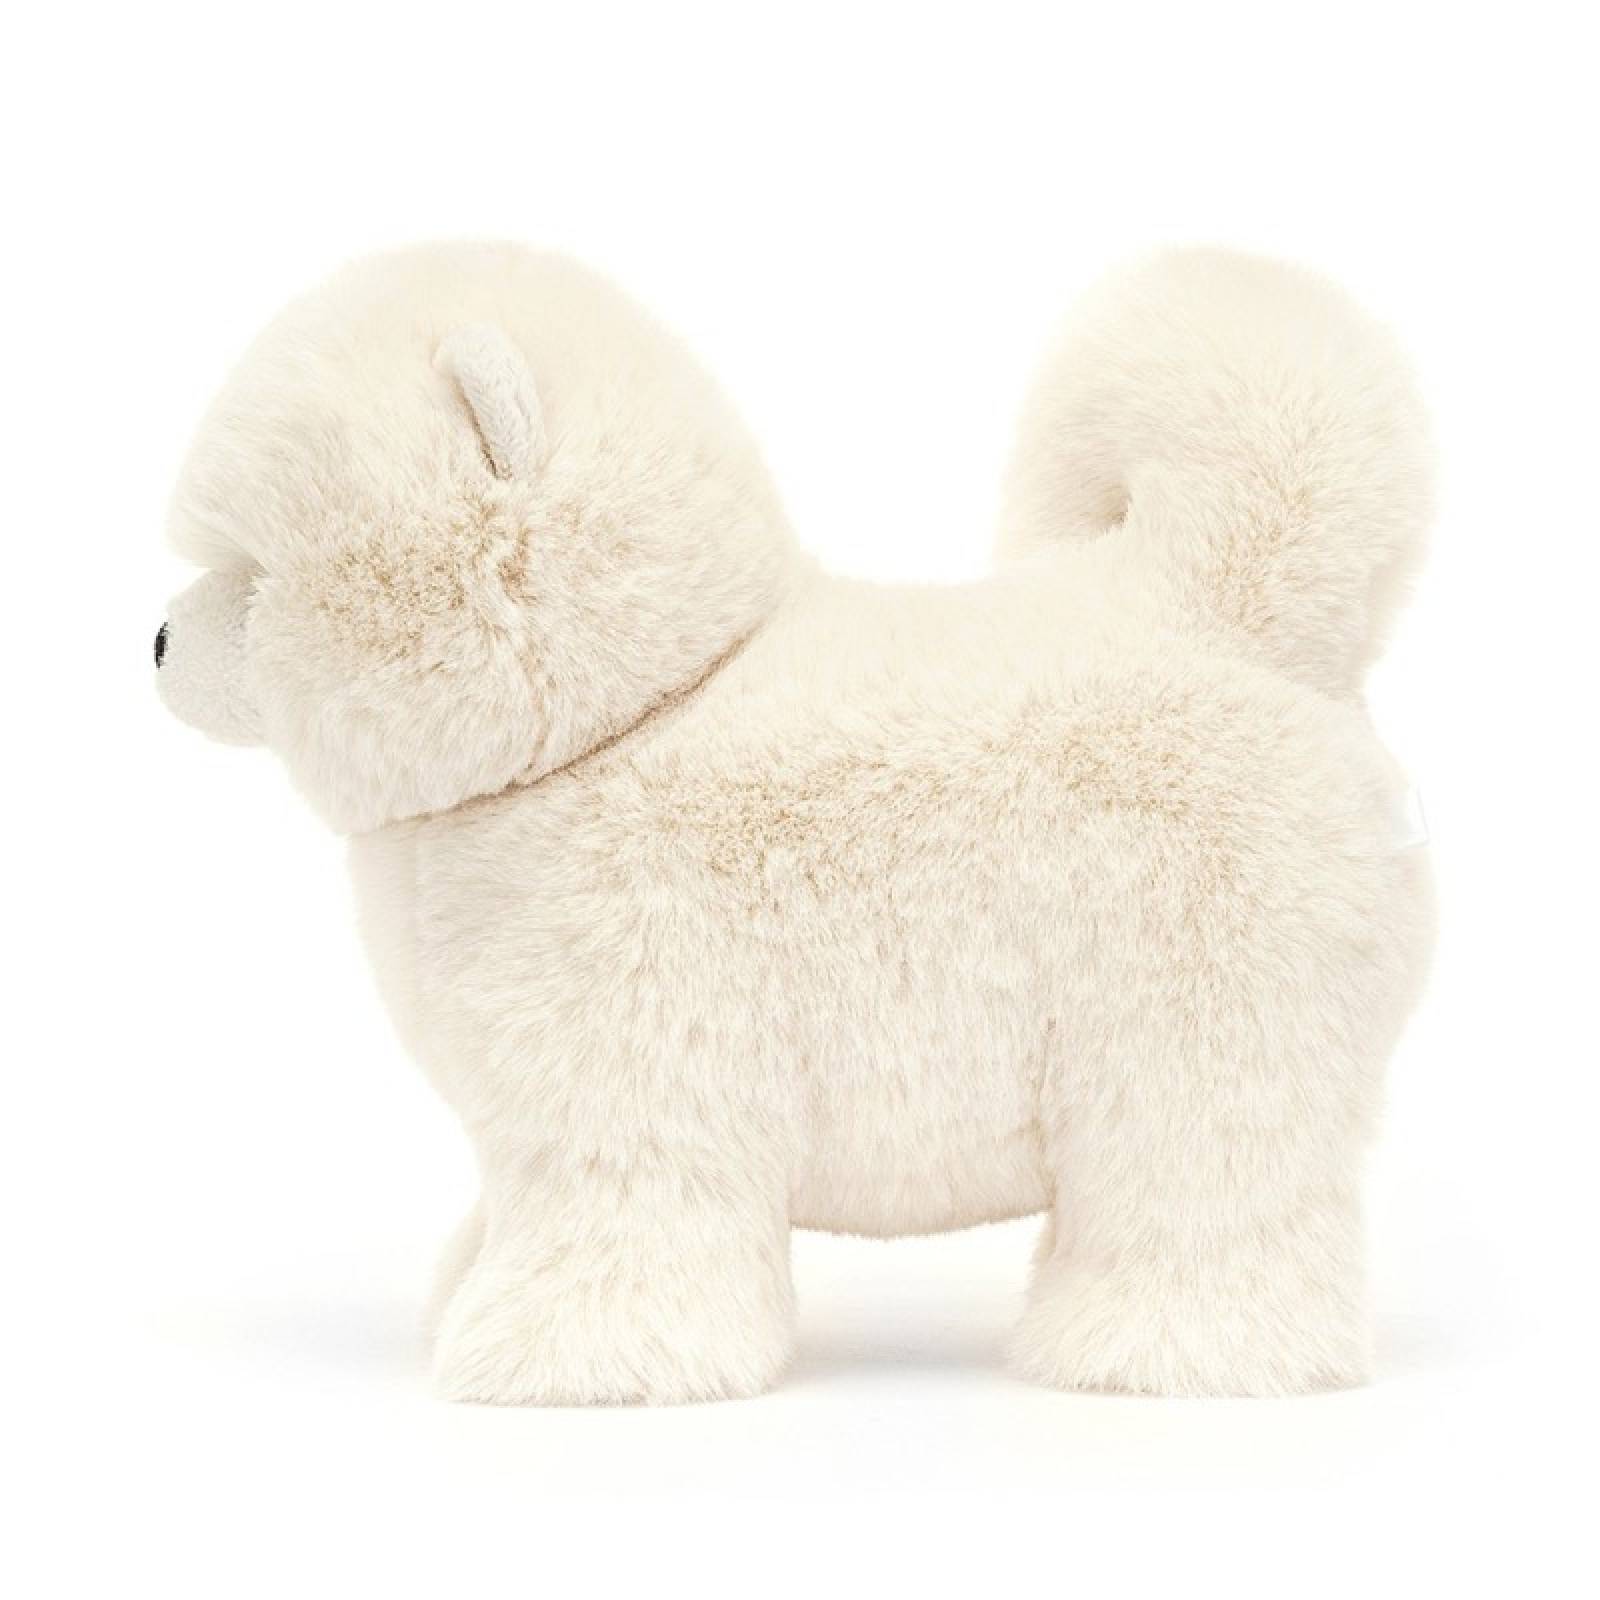 Daphne Pomeranian Dog Soft Toy By Jellycat 0+ thumbnails